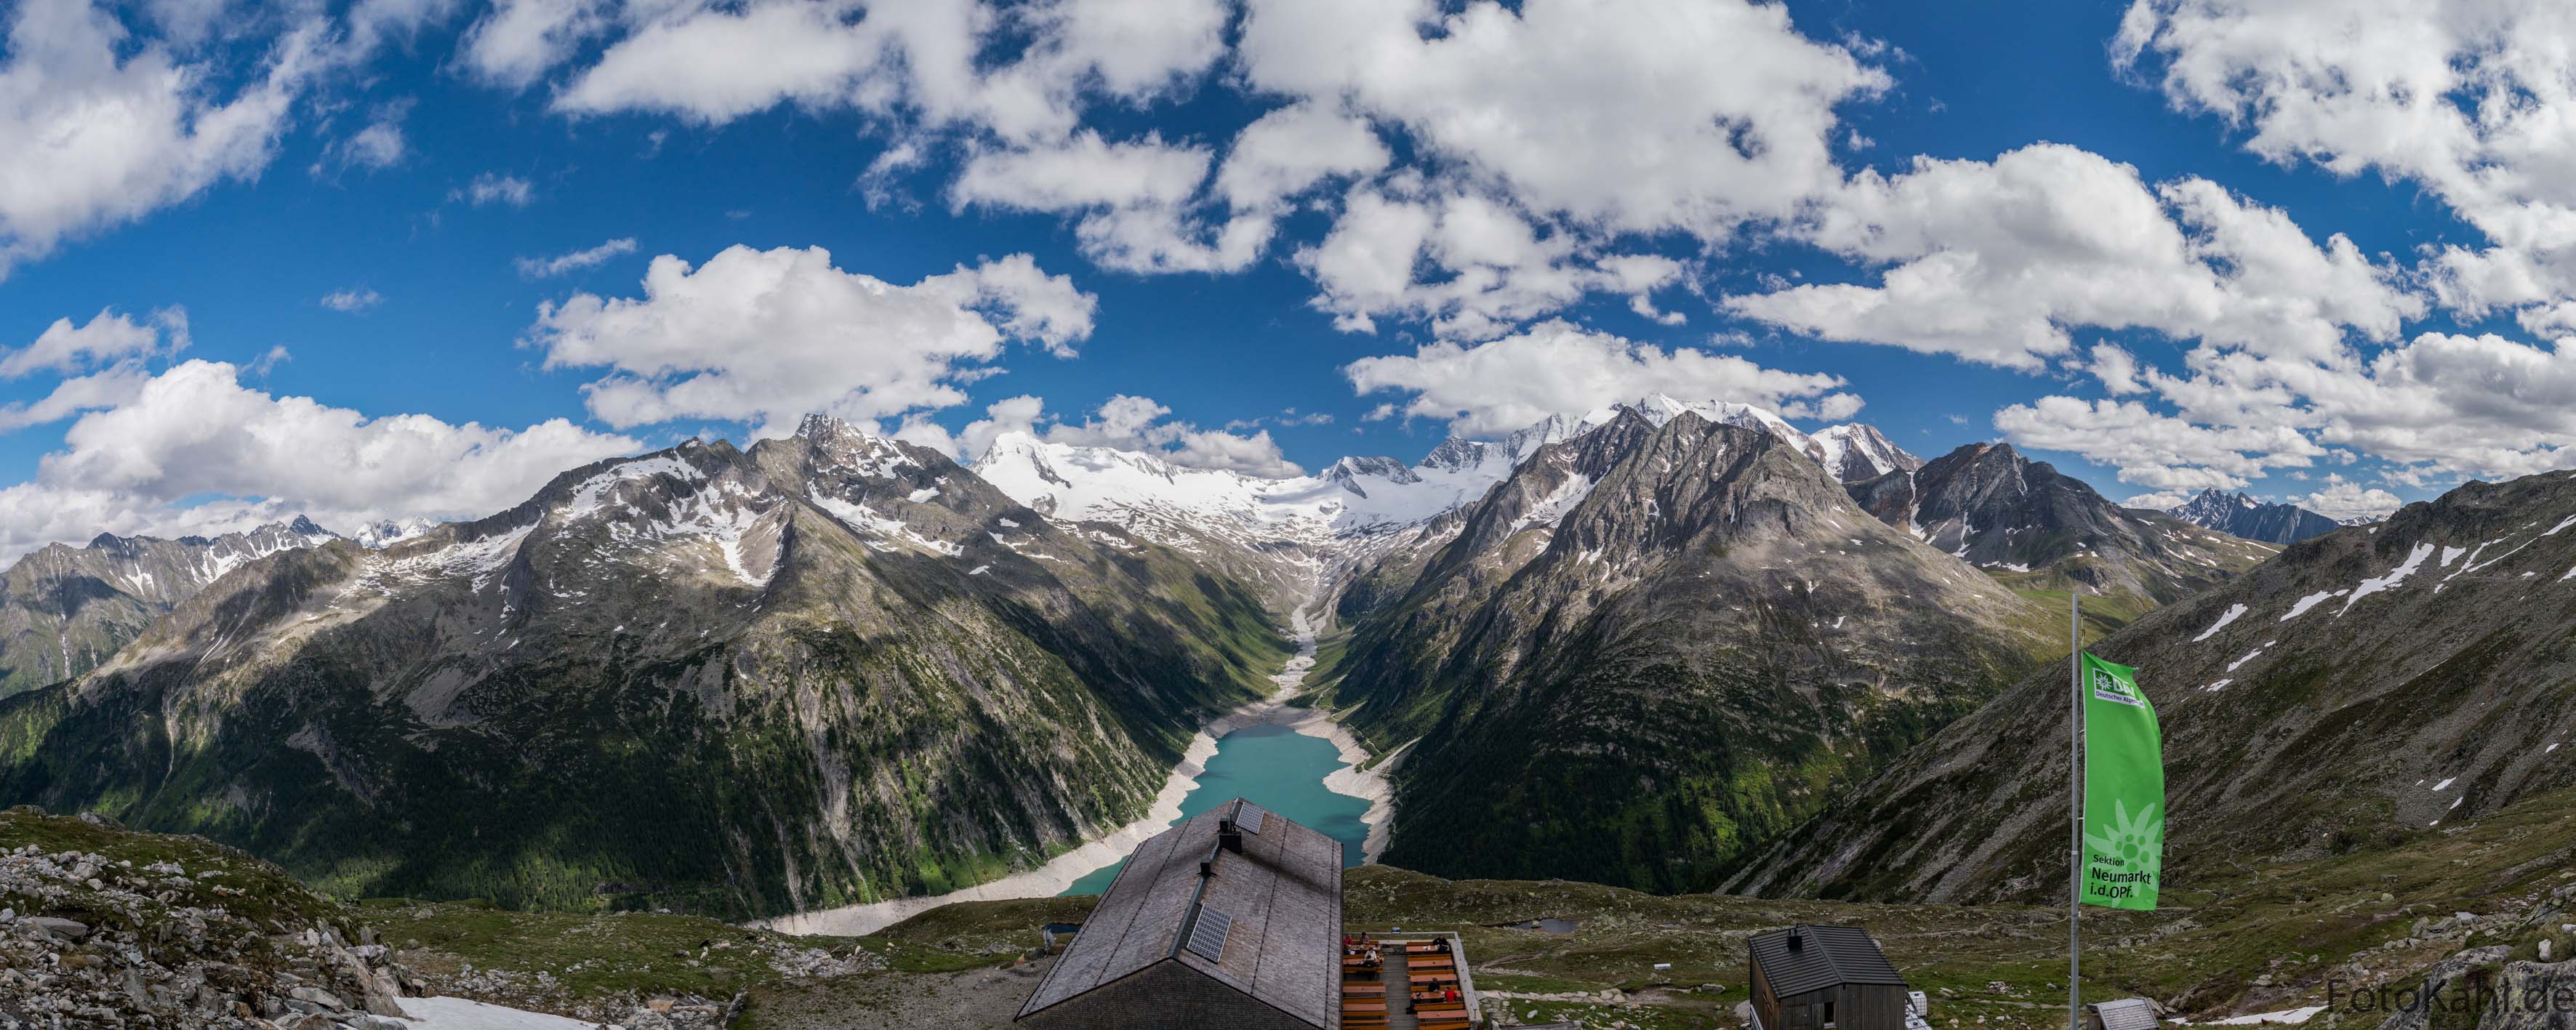 Schlegeisspeicher mit Olpererhütte - Zillertaler Alpen